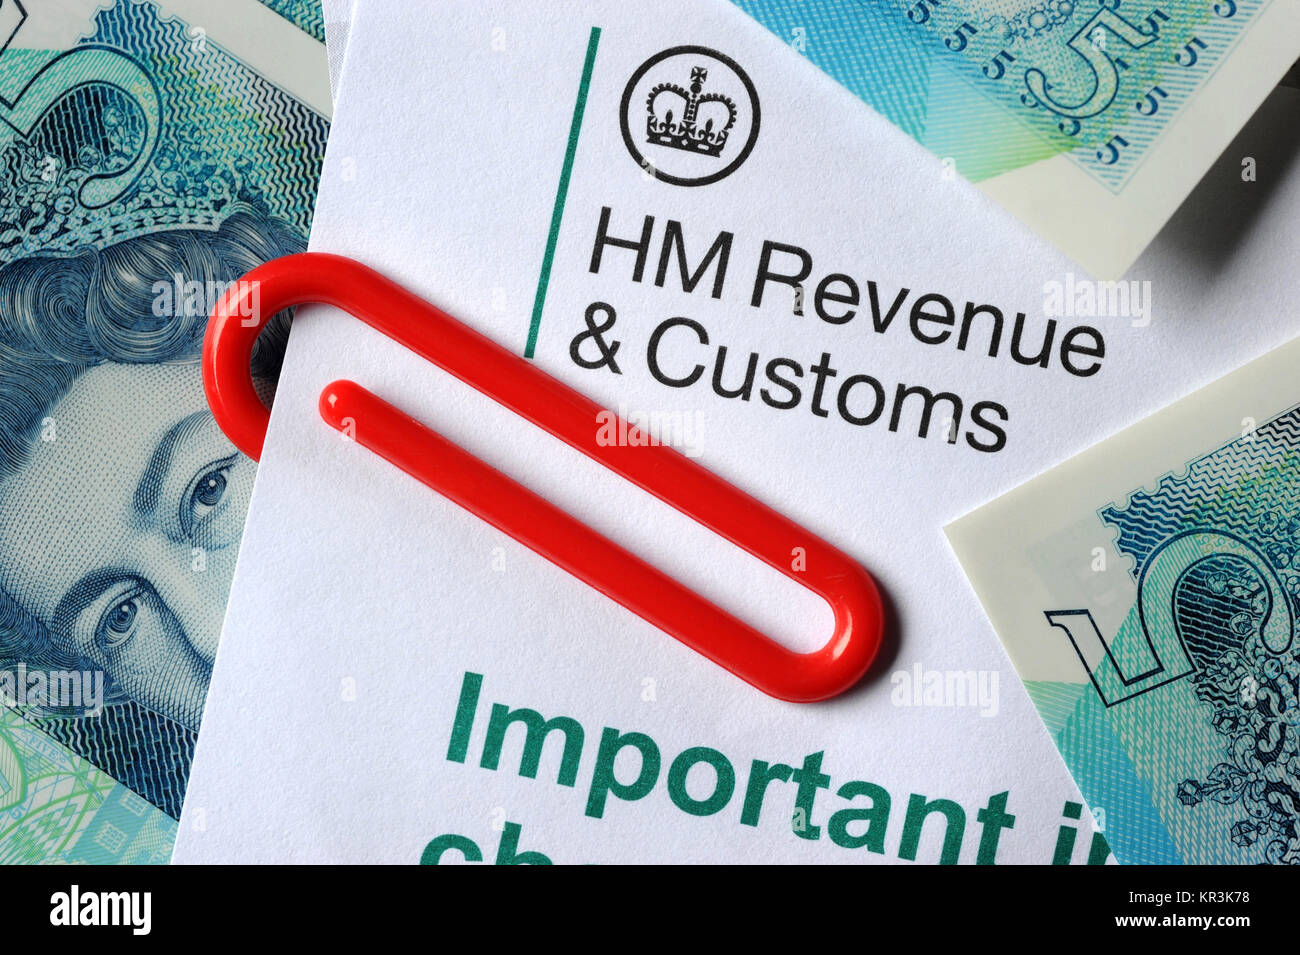 El HMRC Inland Revenue carta con nuevas notas de cinco libras y CLIP RE H M de impuestos los ingresos y los impuestos de aduanas LOS INGRESOS UK Foto de stock